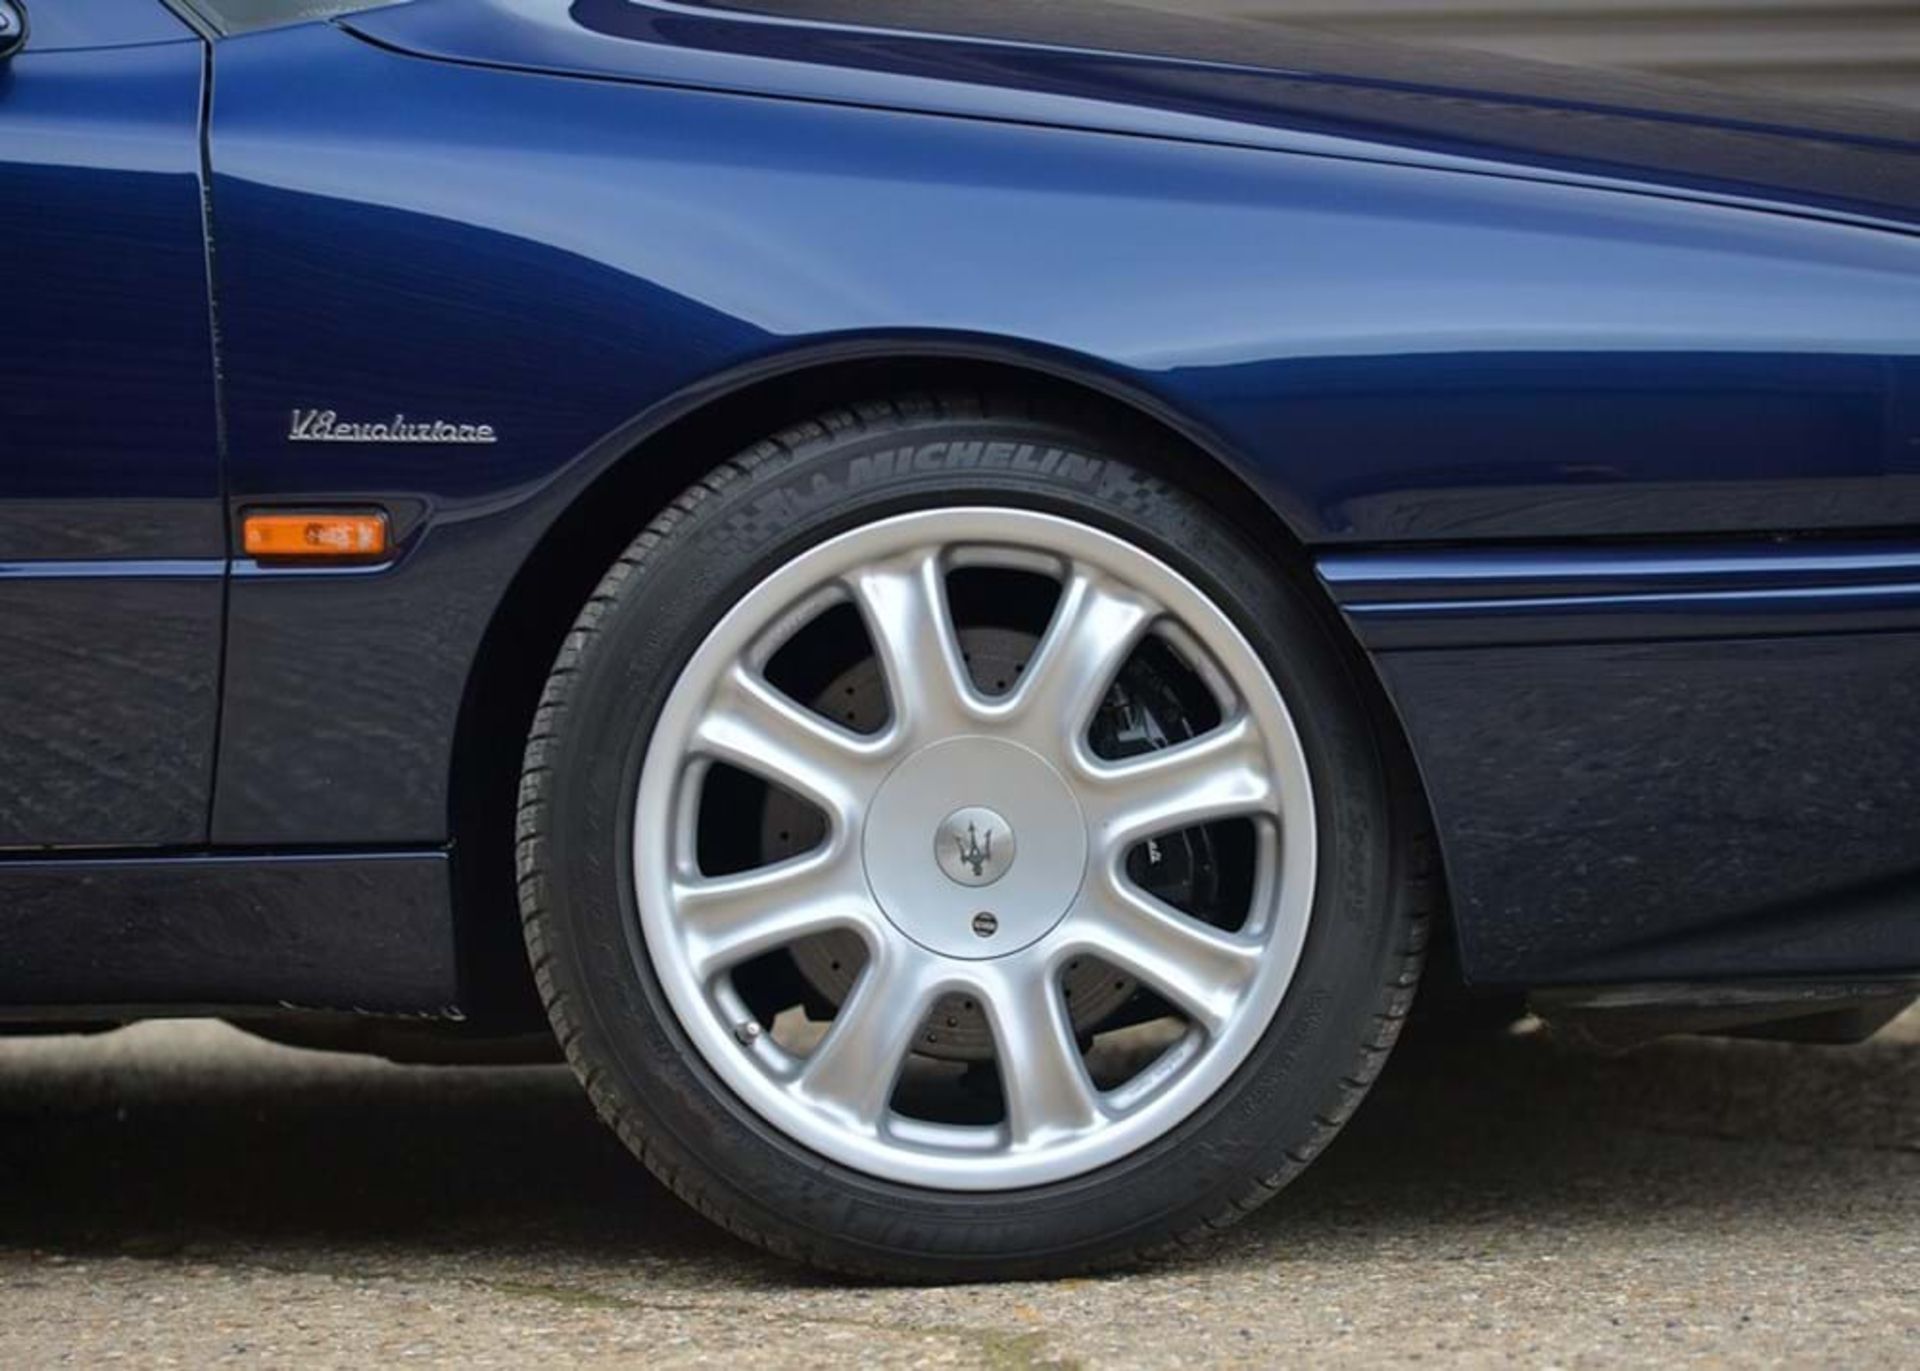 1999 Maserati Quattroporte IV Evoluzione (3.2 litre) - Image 3 of 10